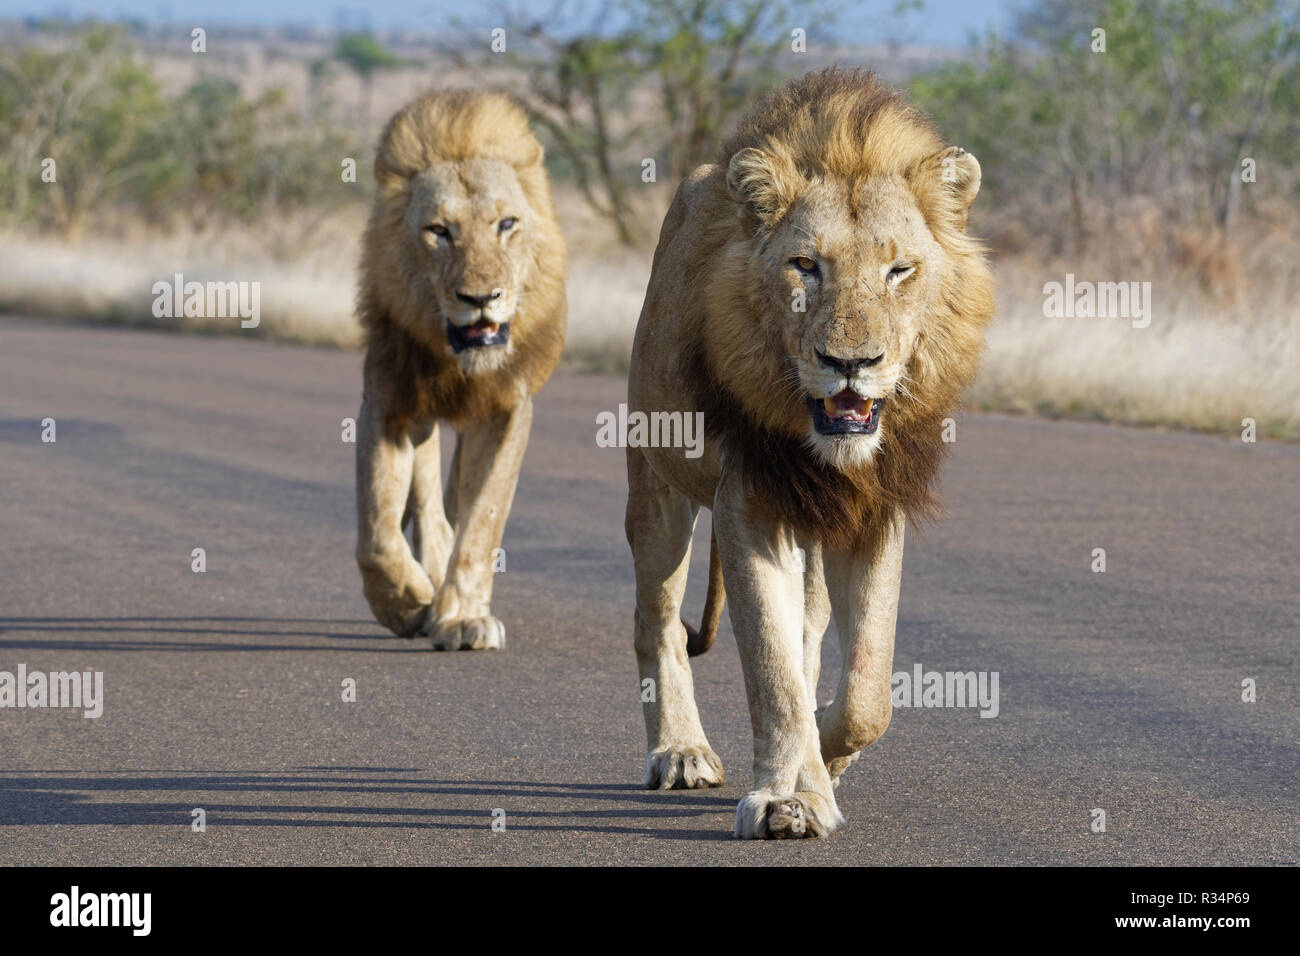 Afrikanische Löwen (Panthera leo), zwei erwachsenen Männchen, einer von ihnen halb blind, wandern auf einer Teerstraße, Krüger Nationalpark, Südafrika, Afrika Stockfoto